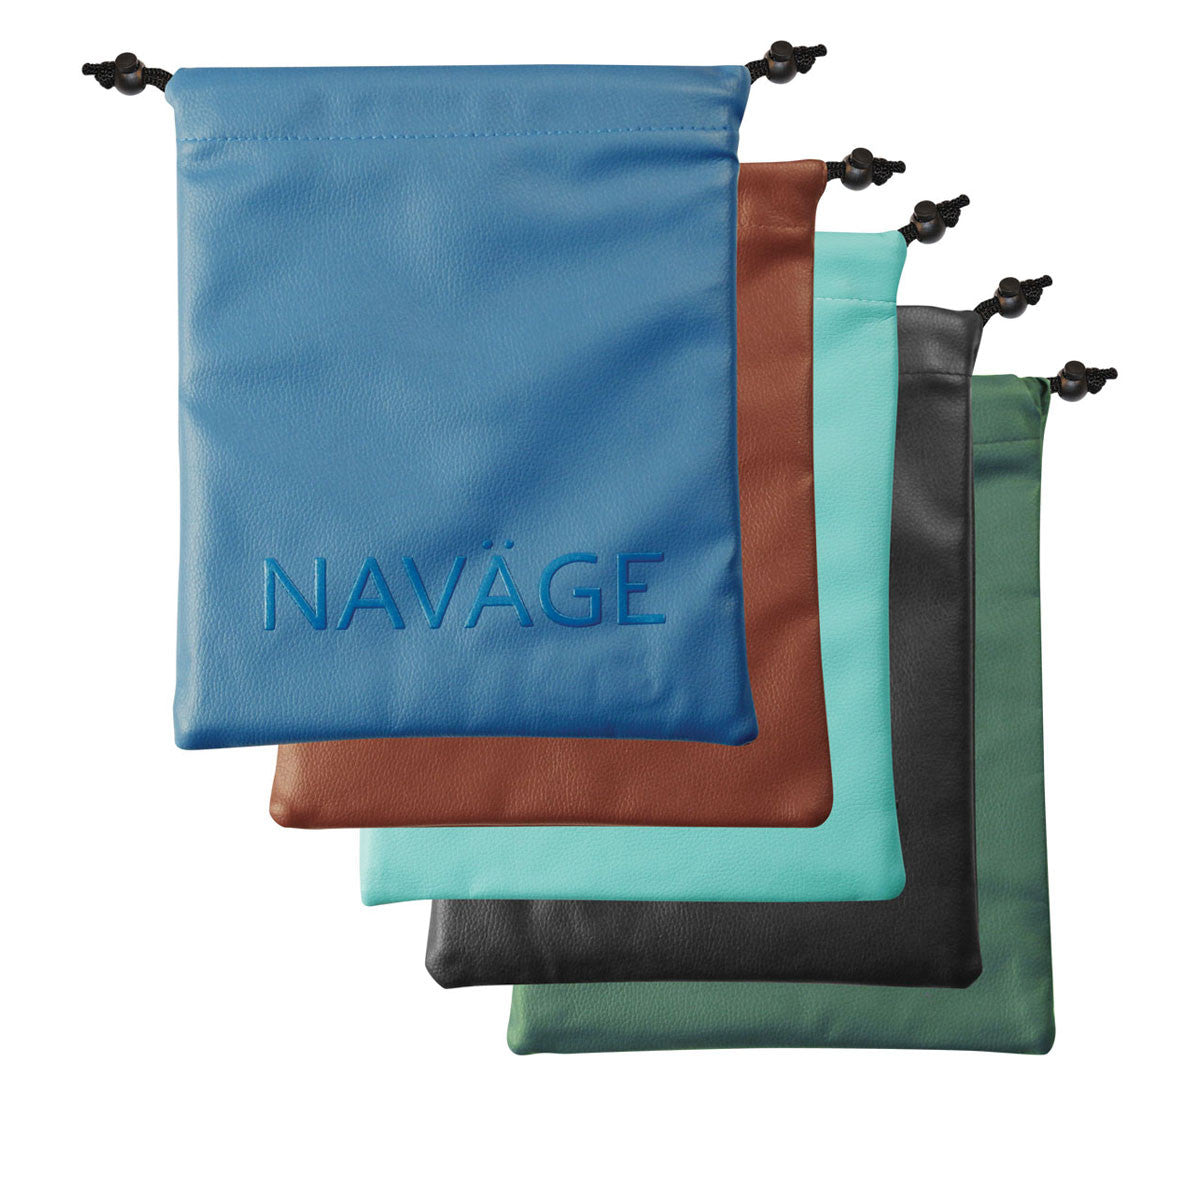 Navage Deluxe Bundle : nettoyant pour le nez, 20 Capsules de sel, support de comptoir, sac de voyage